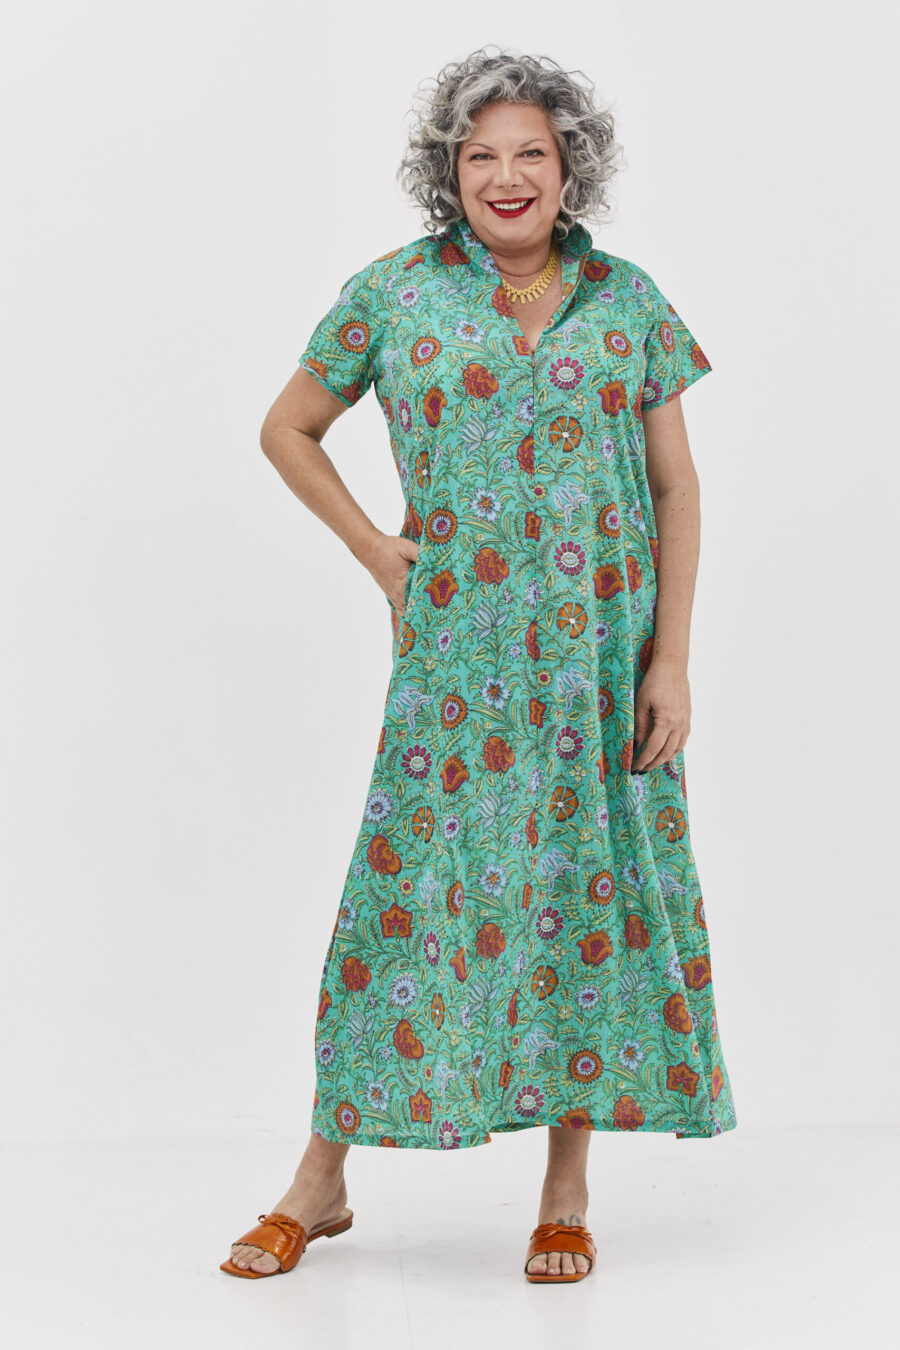 שמלת מאיקו | שמלה יפנית בעלת מפתח בעיצוב ייחודי – פרינט סימפוני, שמלה בצבע טורקיז ירקרק עם הדפס פרחוני צבעוני.